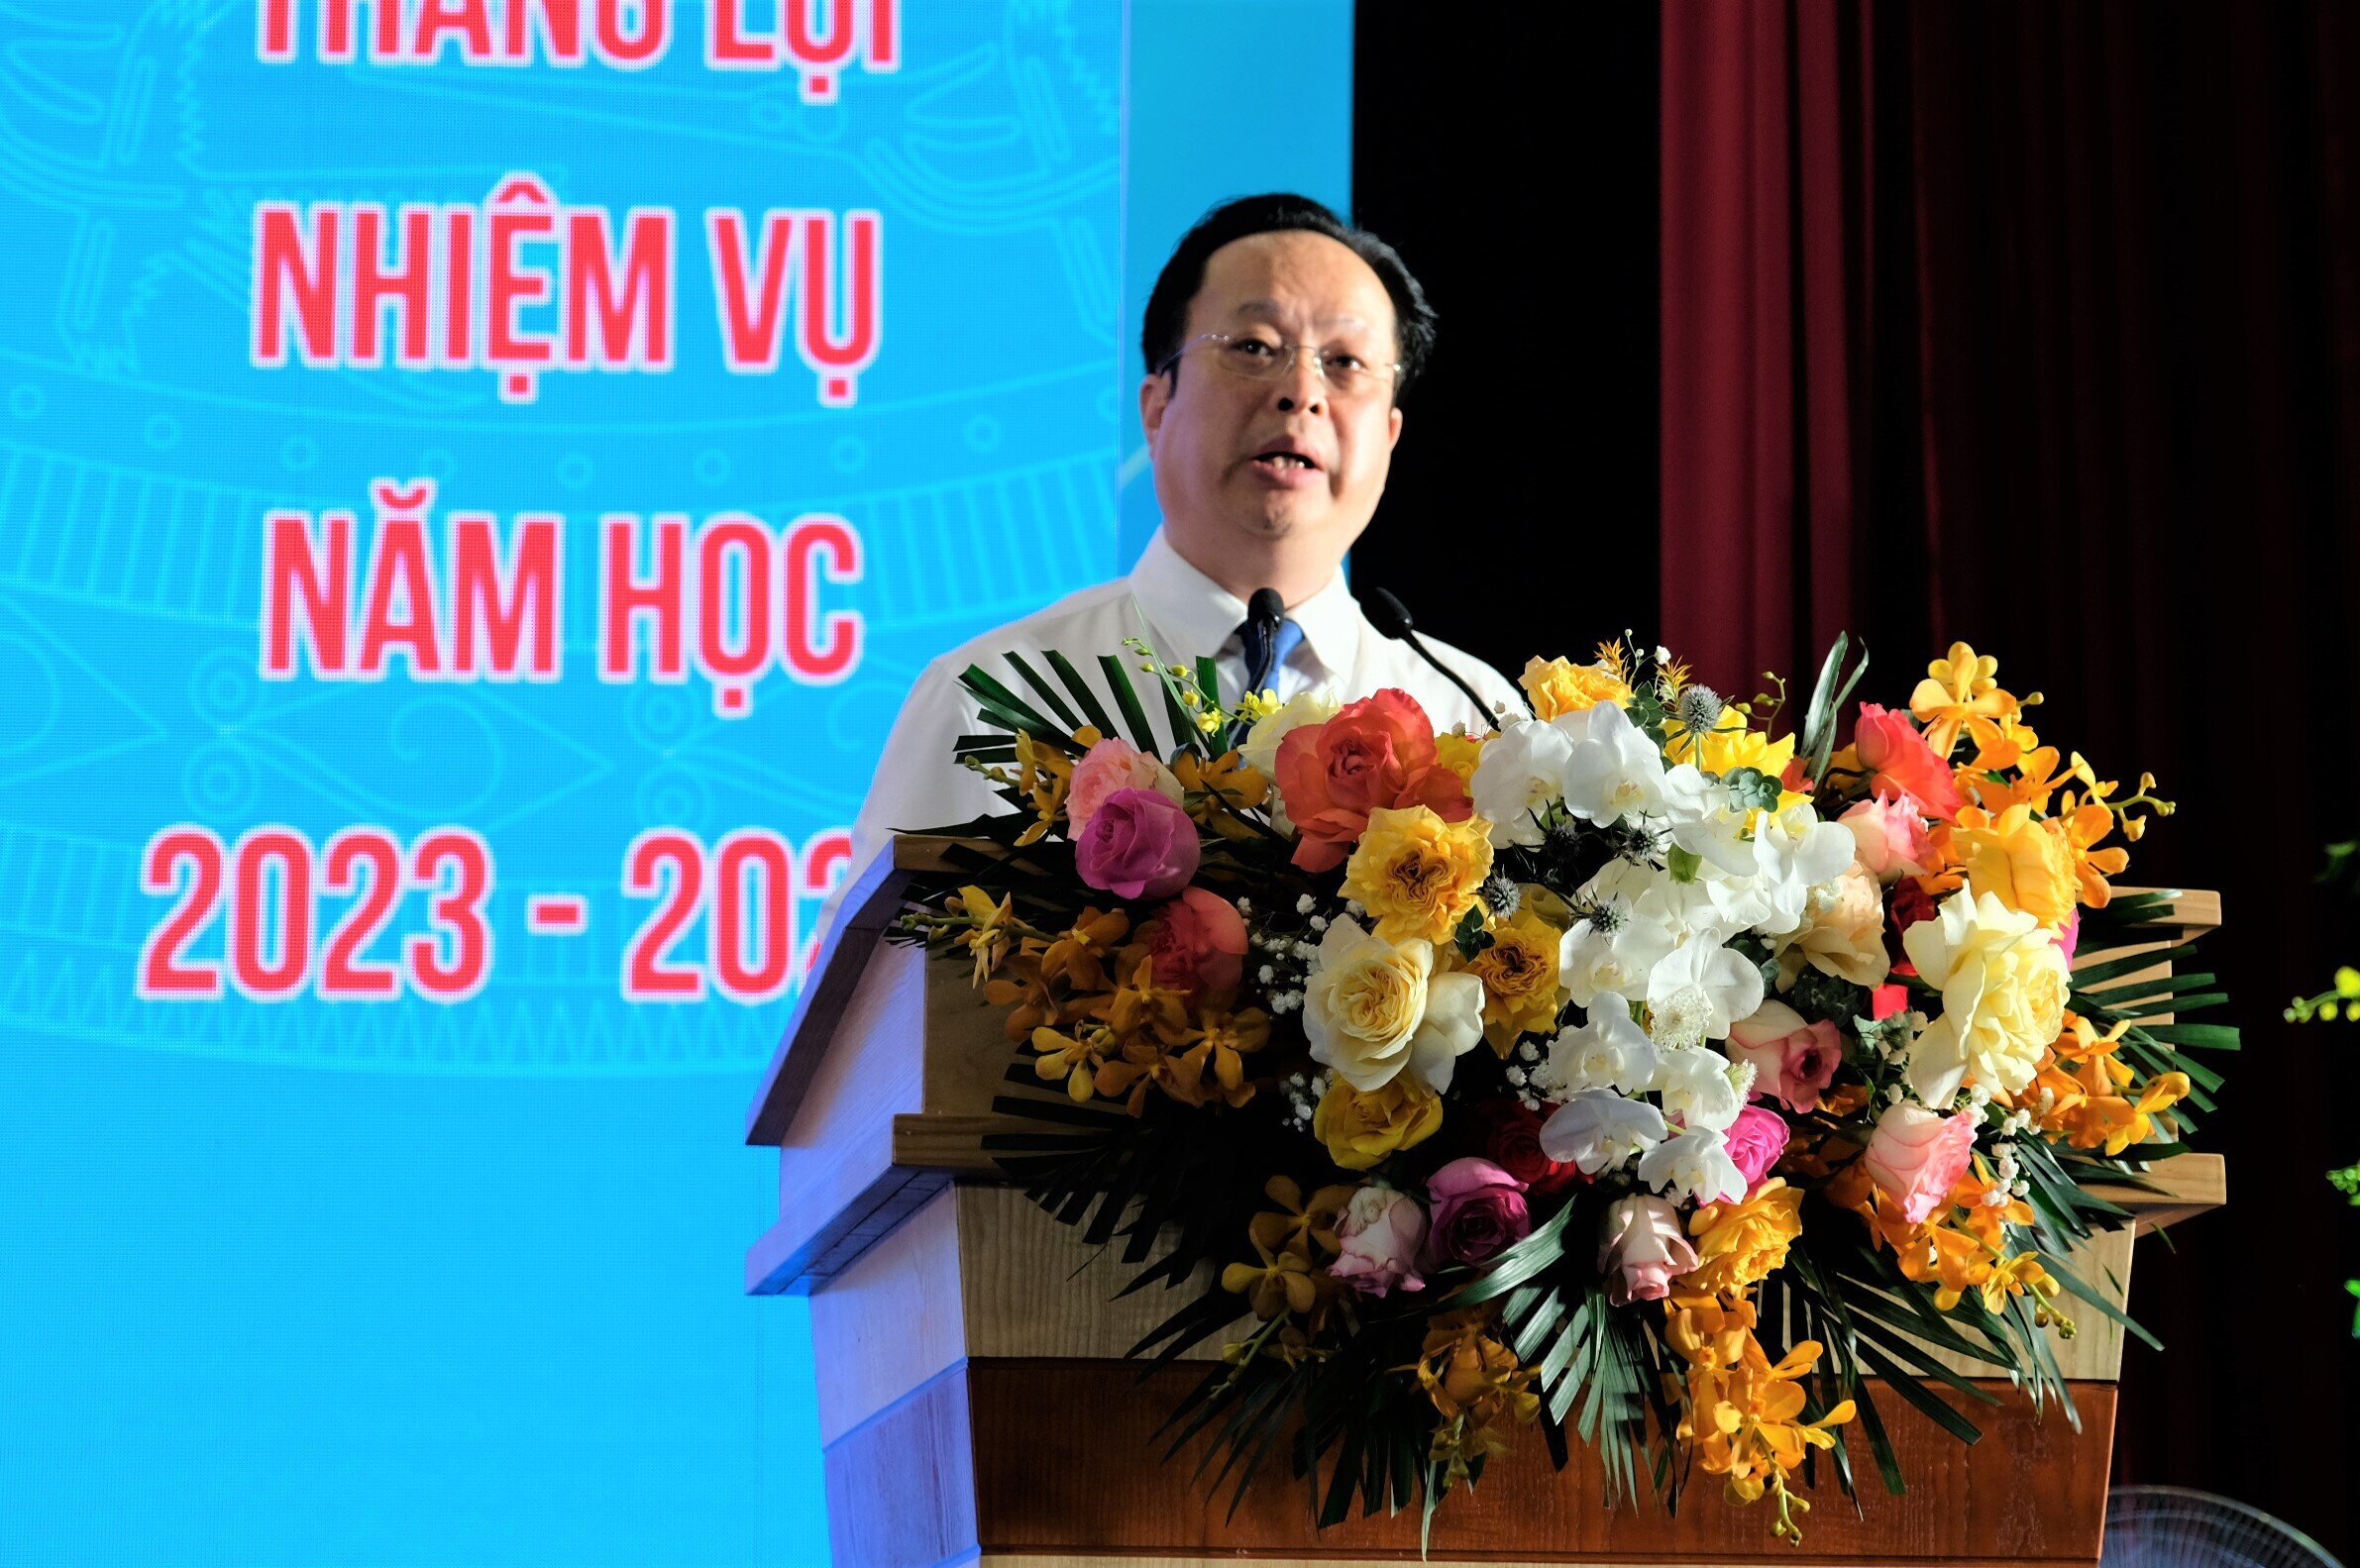 Ông Trần Thế Cương, Giám đốc Sở GD&ĐT Hà Nội phát biểu tại Hội nghị sáng 16/8. (Ảnh: Khánh Sơn)